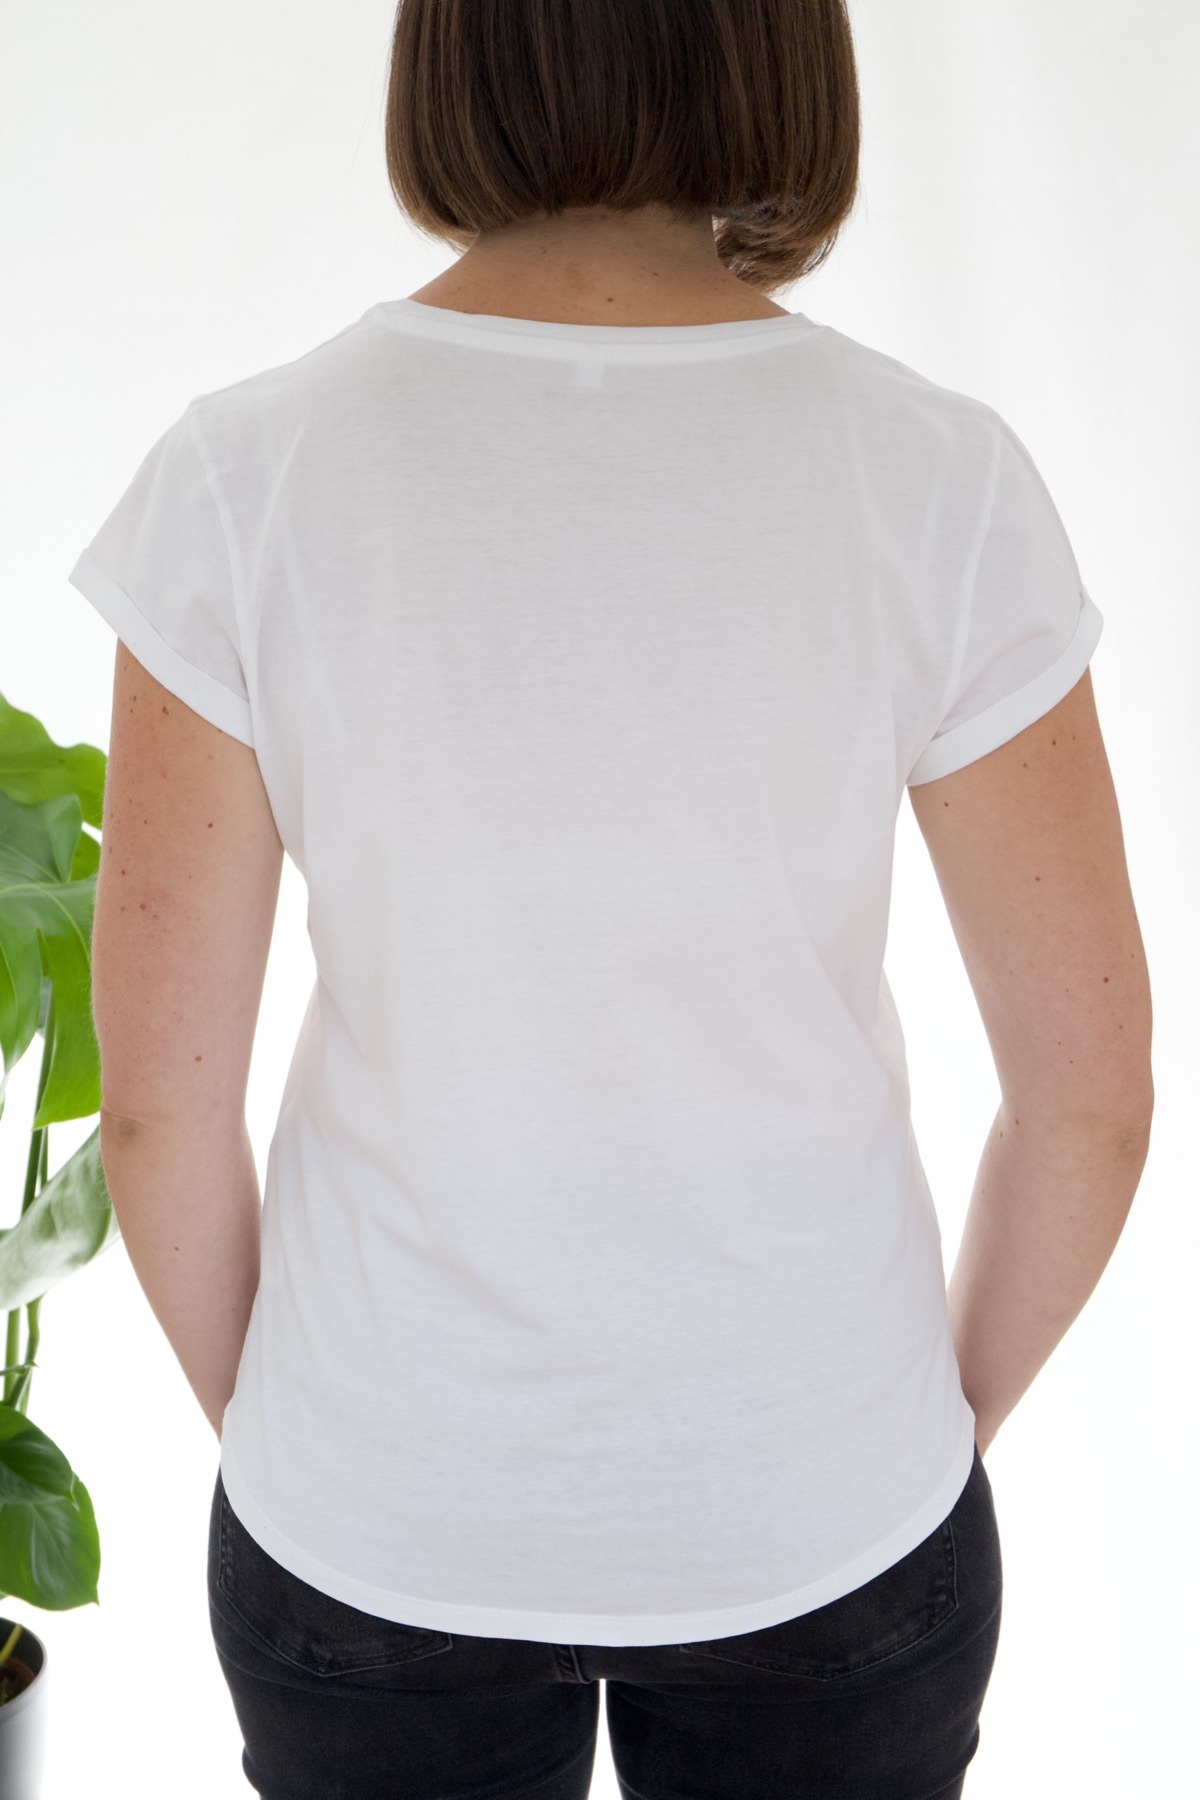 Damen T-Shirt Unendlich geliebt - weiß 3